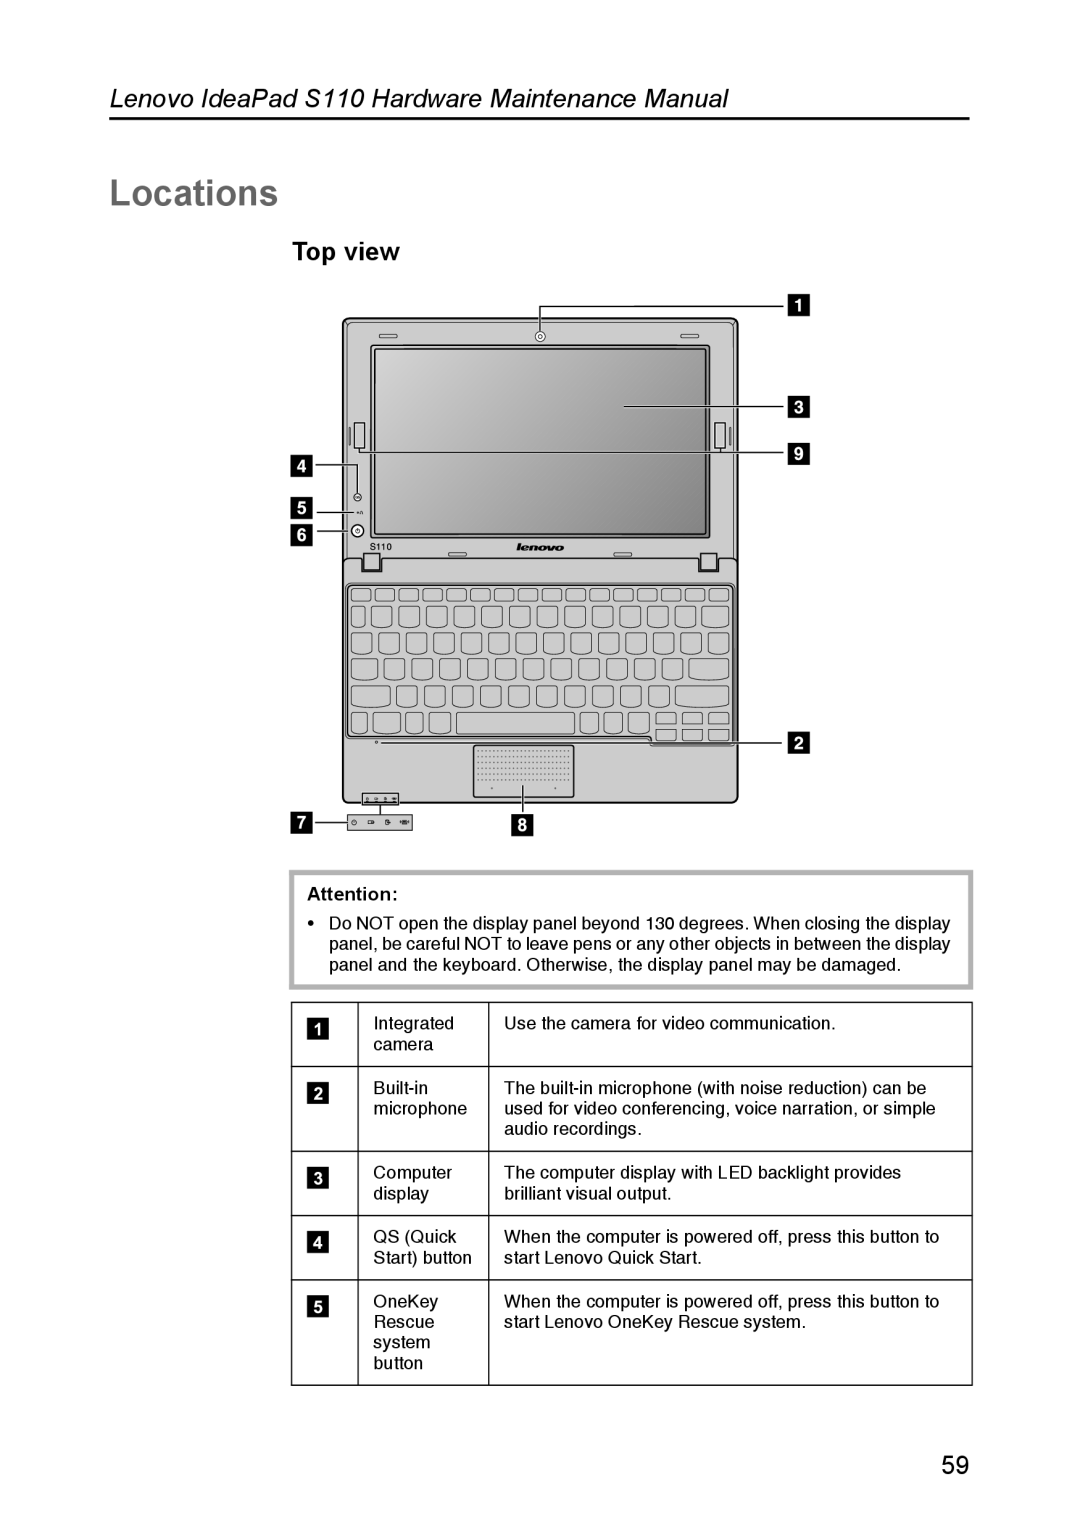 Lenovo manual Locations, Top view, Lenovo IdeaPad S110 Hardware Maintenance Manual 